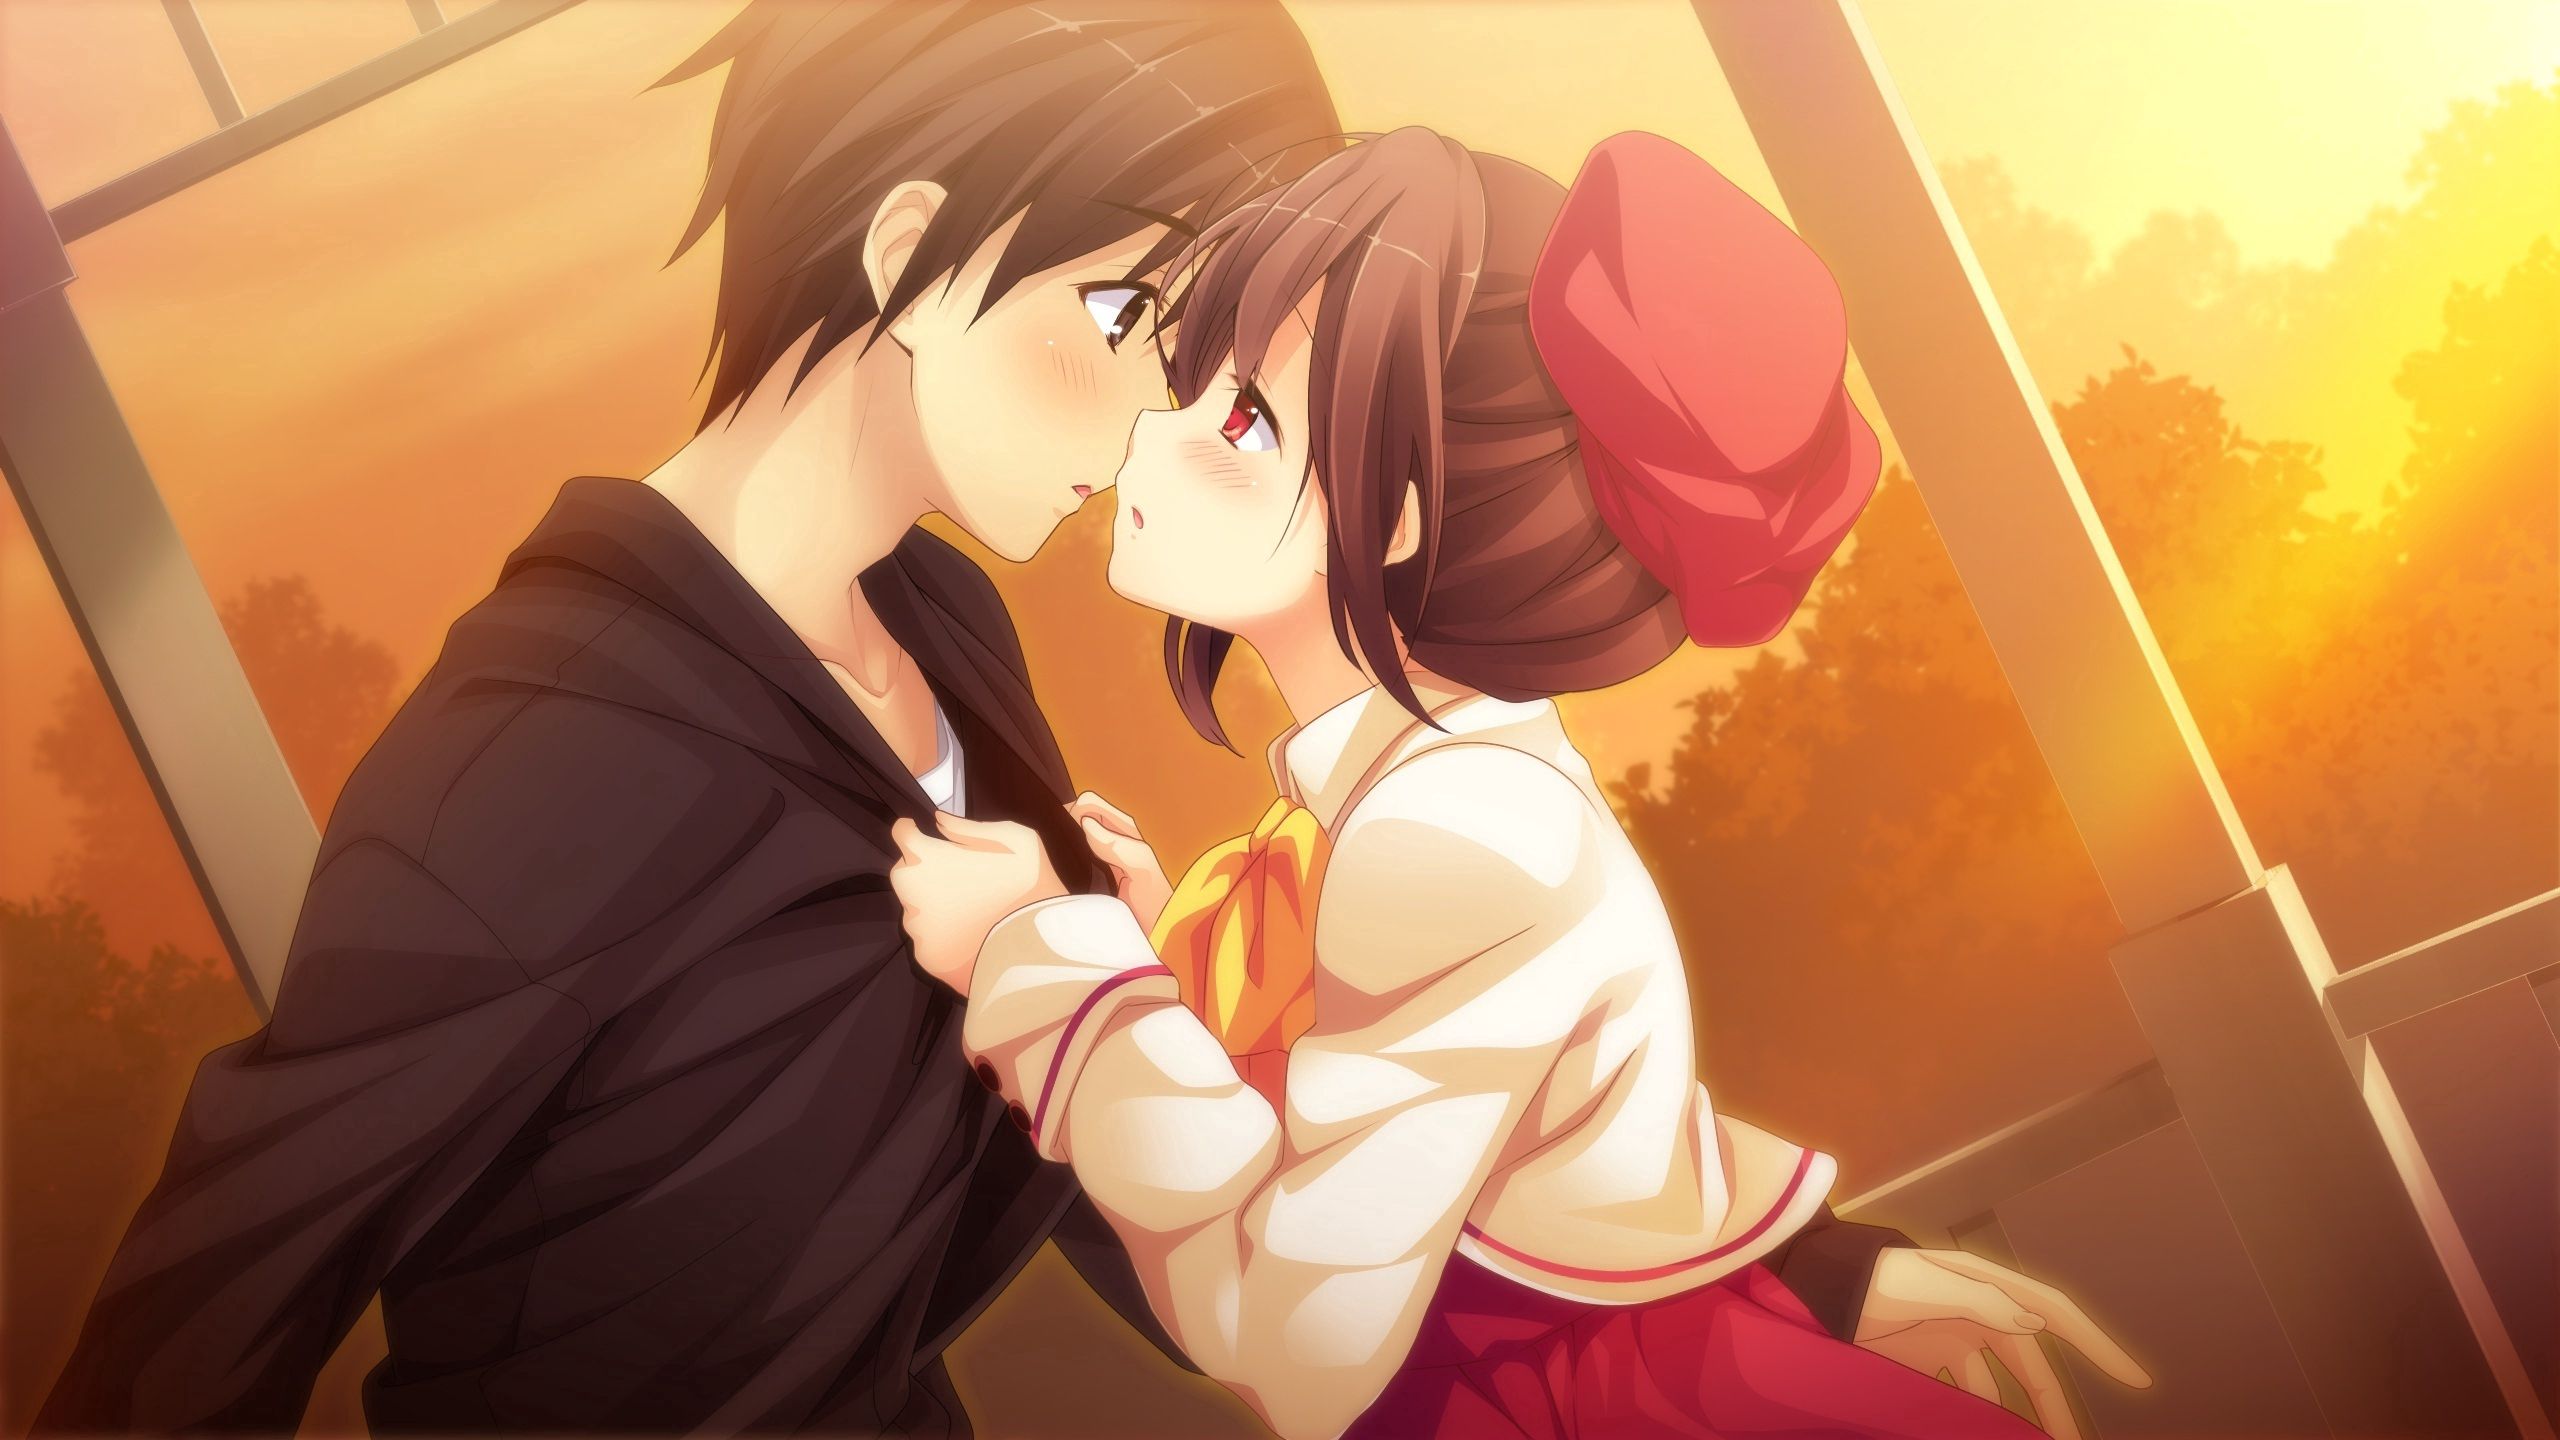 couple, pair, guy, girl, kiss, anime, sunset, art Full HD